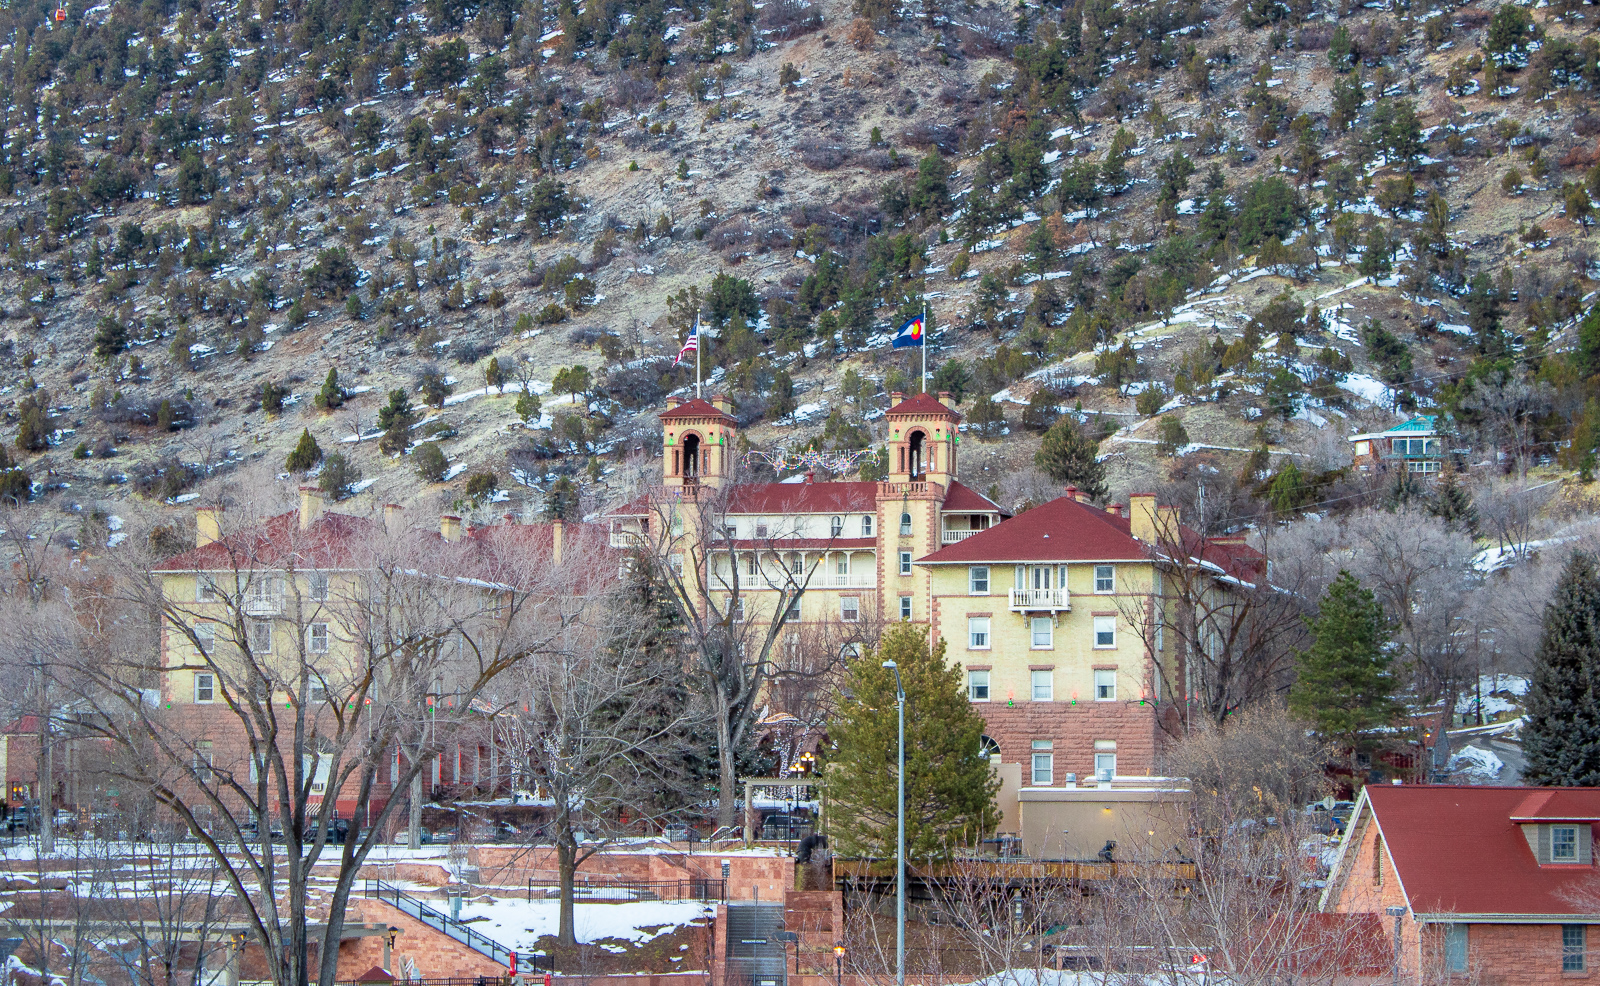 Historic Hotel Colorado